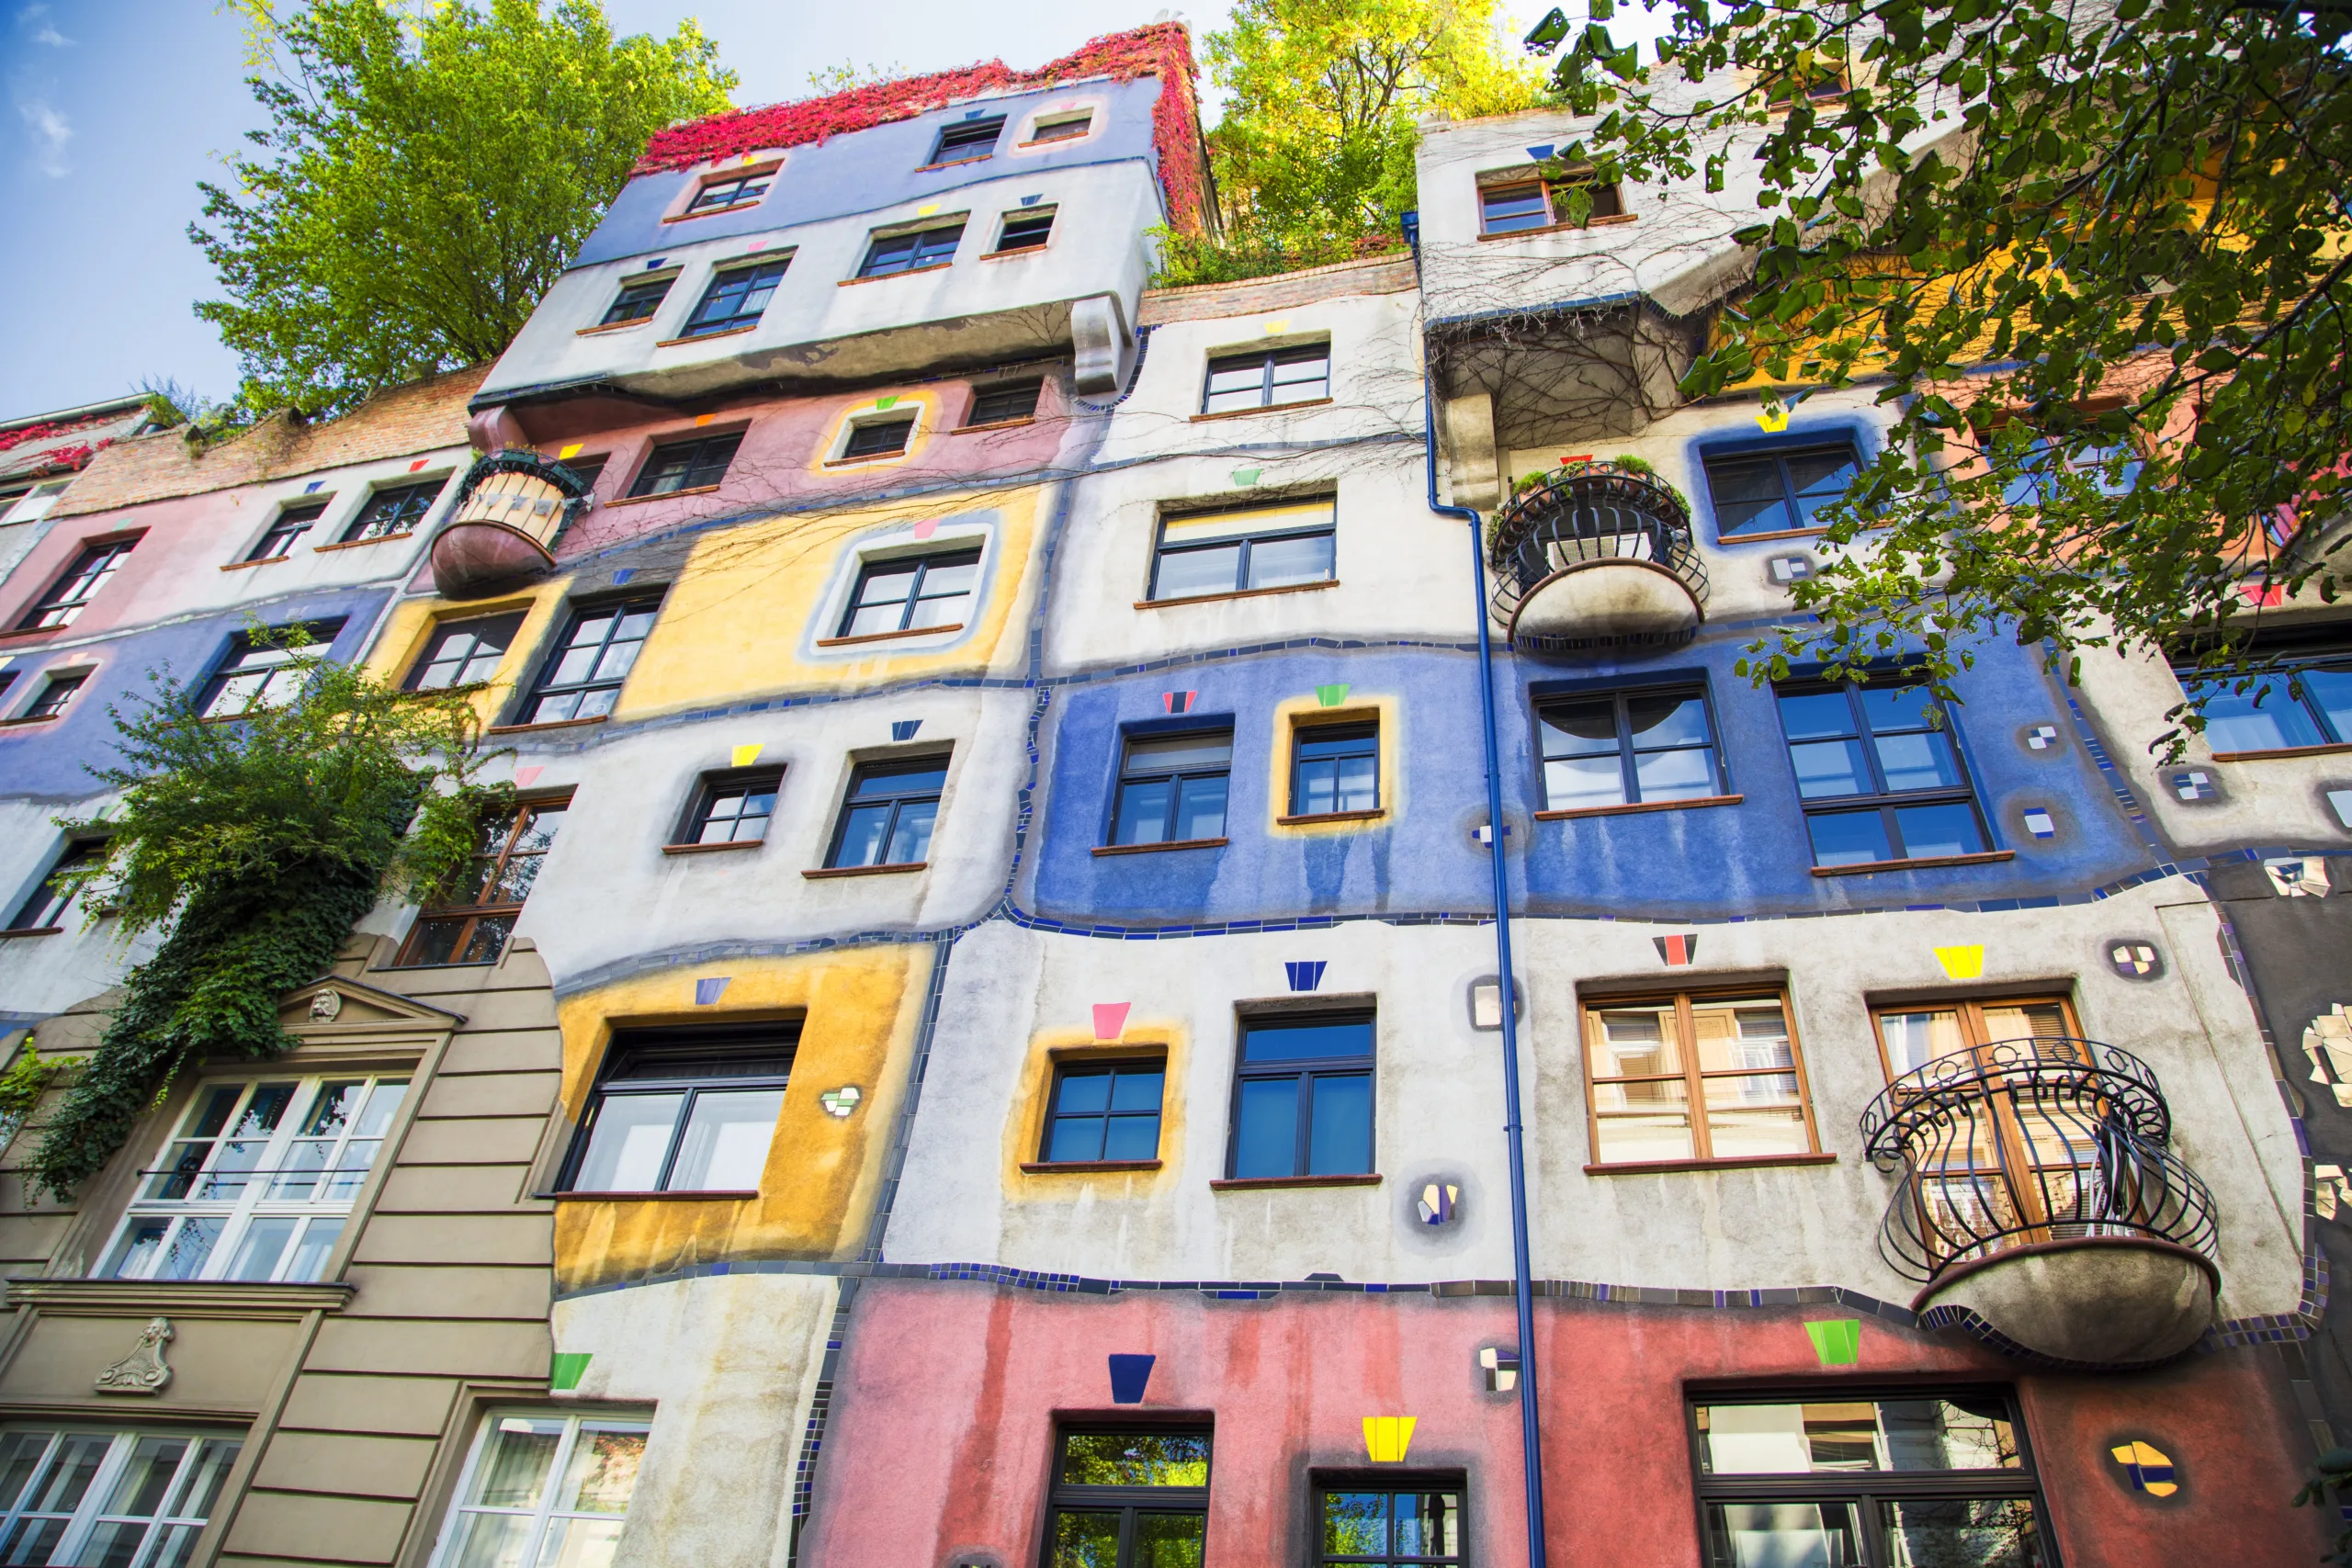 The view of Hundertwasser house in Vienna, Austria